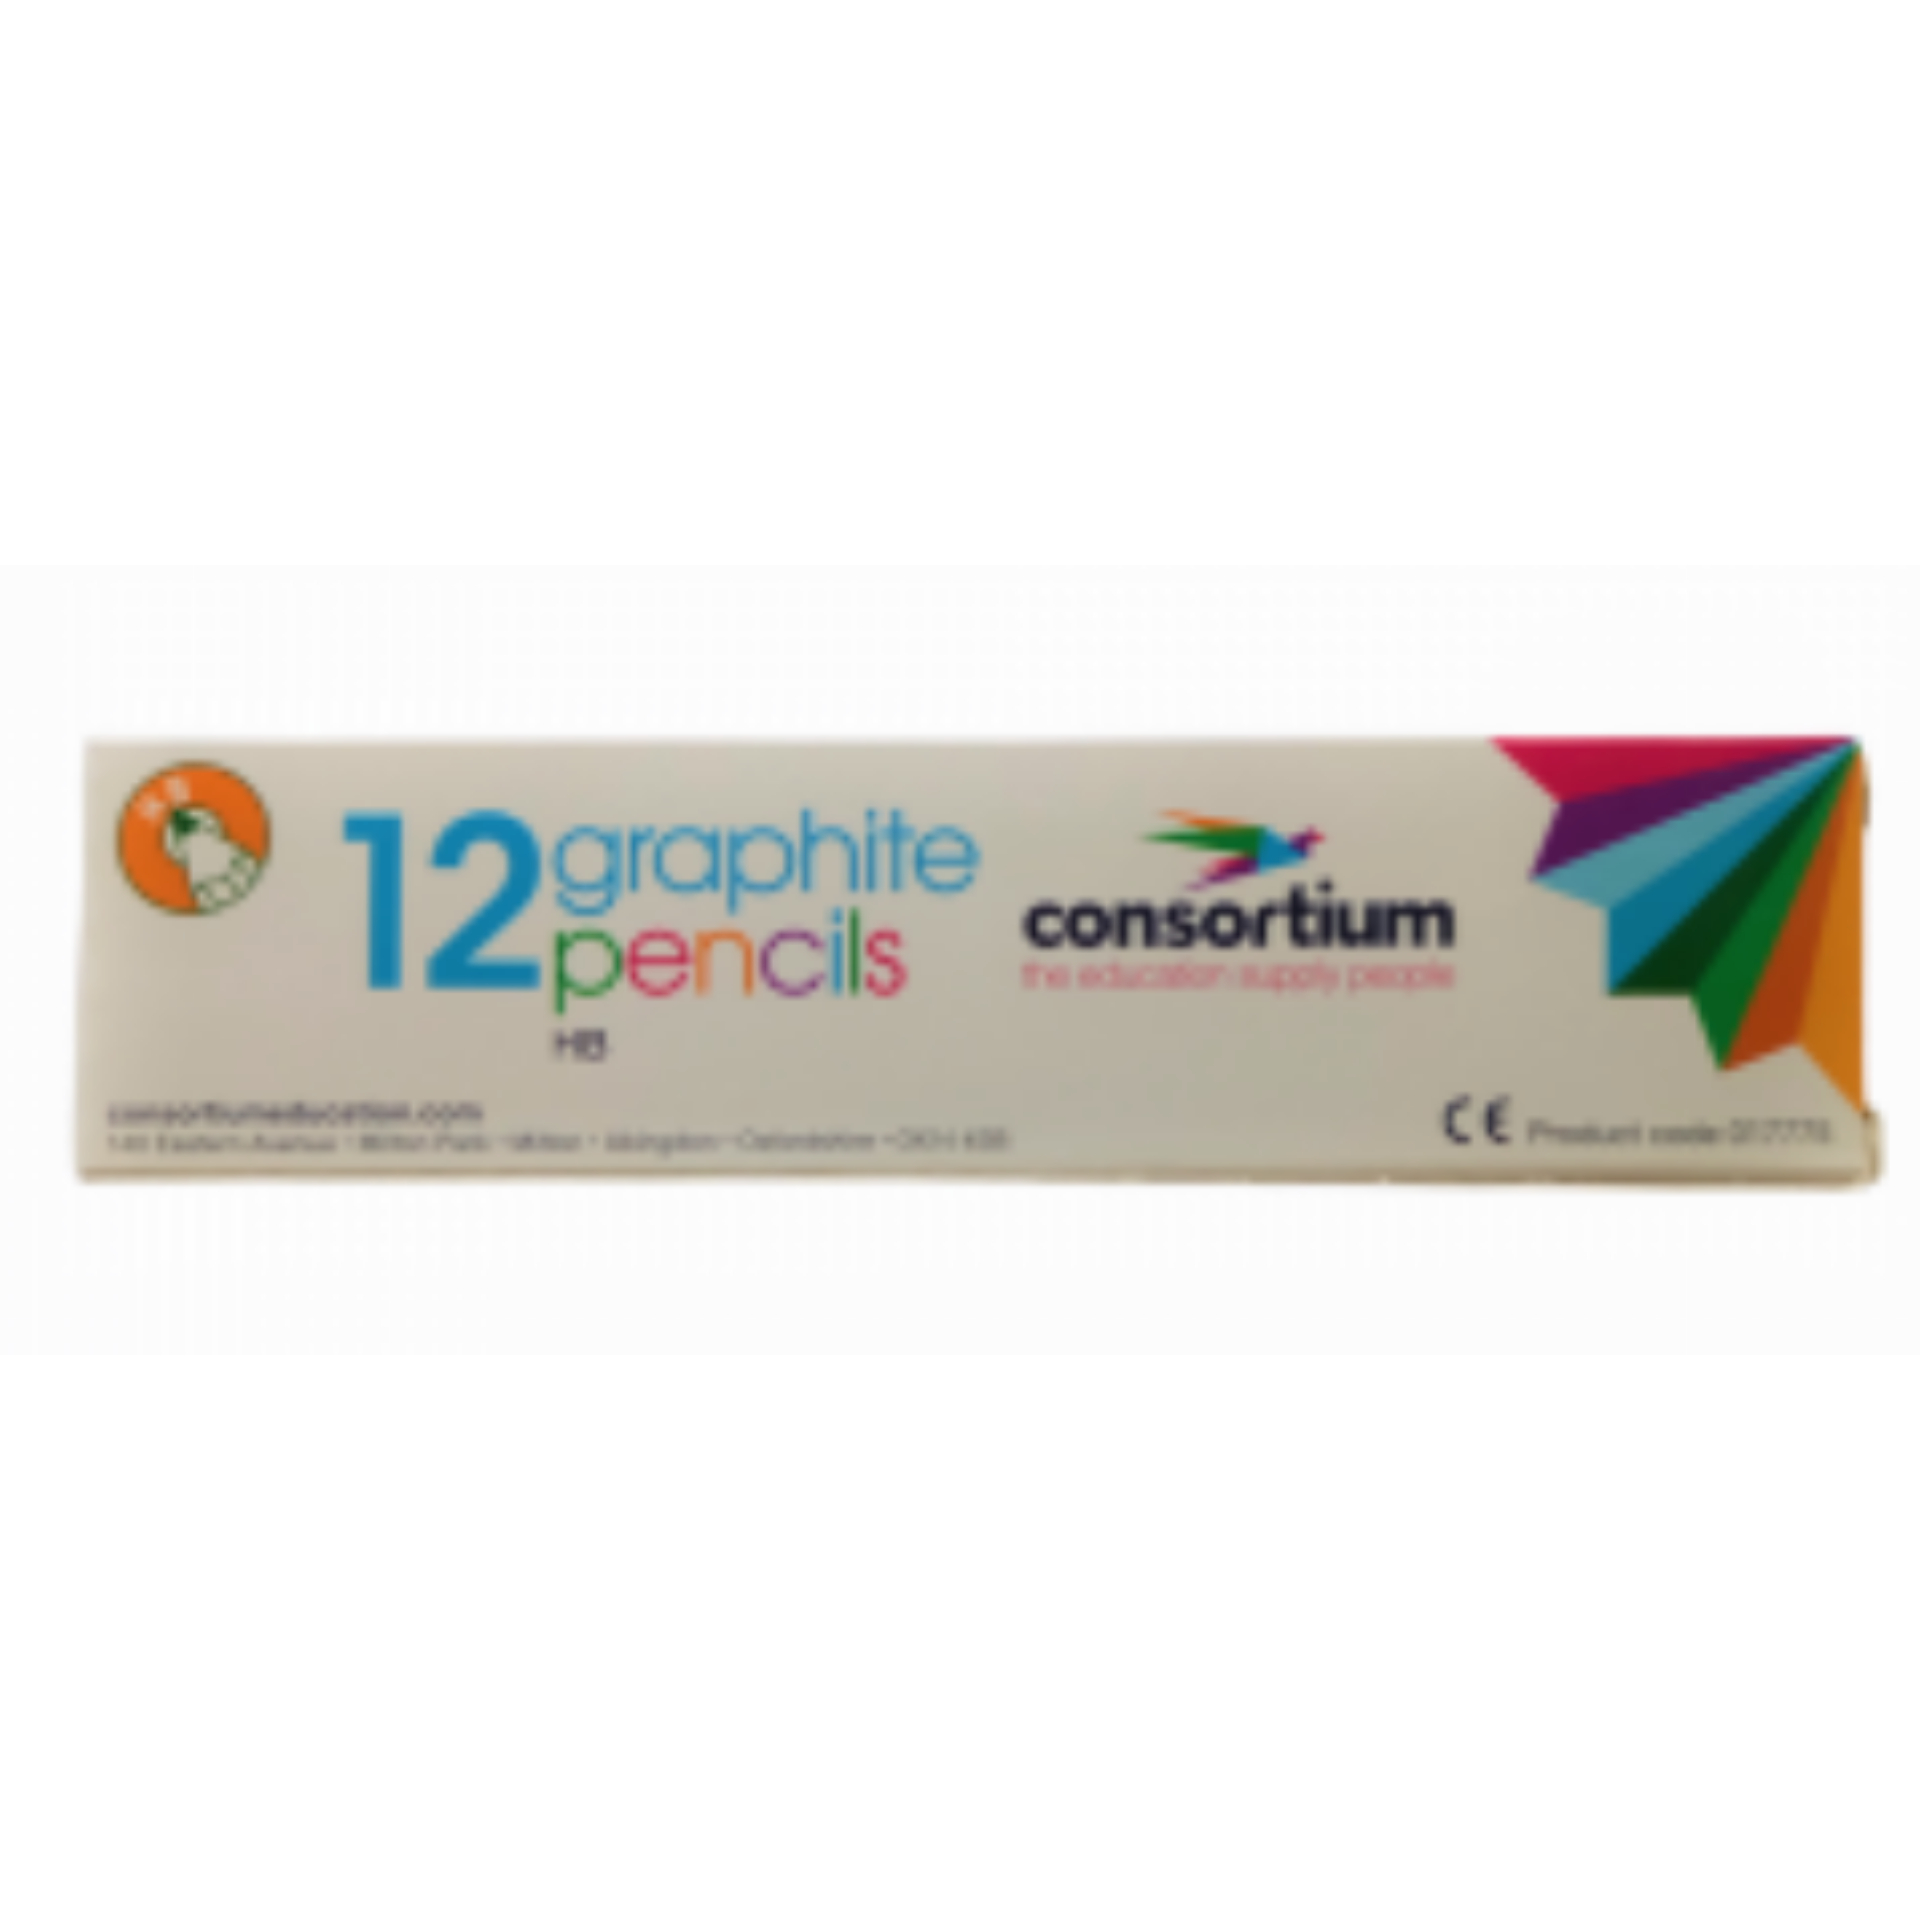 schoolstoreng Consortium Pencils - Pack of 12